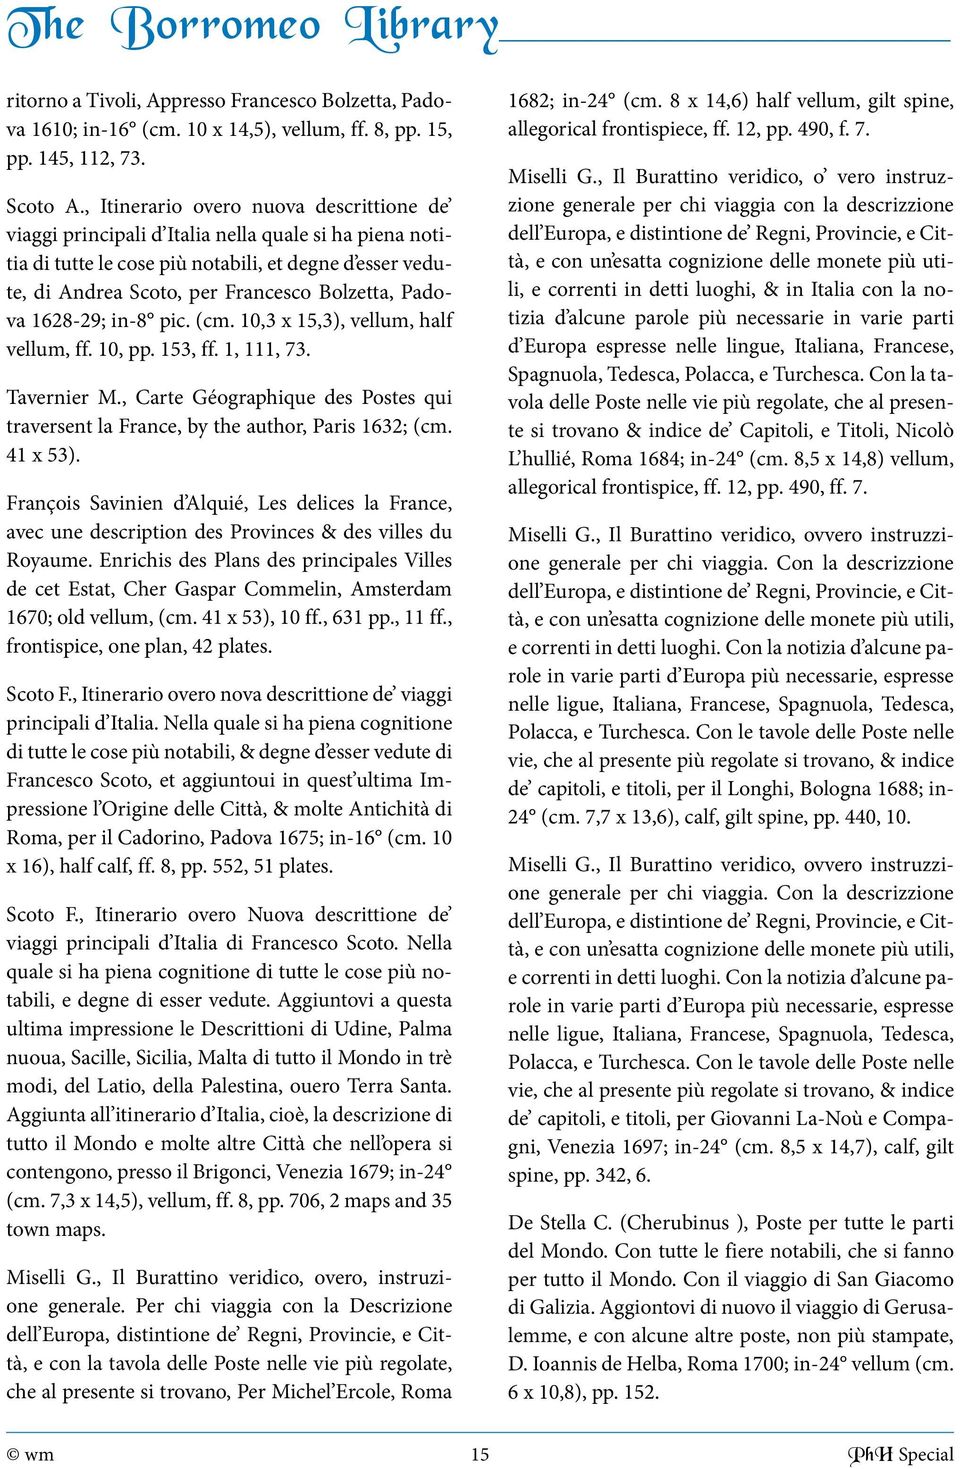 Padova 1628-29; in-8 pic. (cm. 10,3 x 15,3), vellum, half vellum, ff. 10, 153, ff. 1, 111, 73. Tavernier M., Carte Géographique des Postes qui traversent la France, by the author, Paris 1632; (cm.